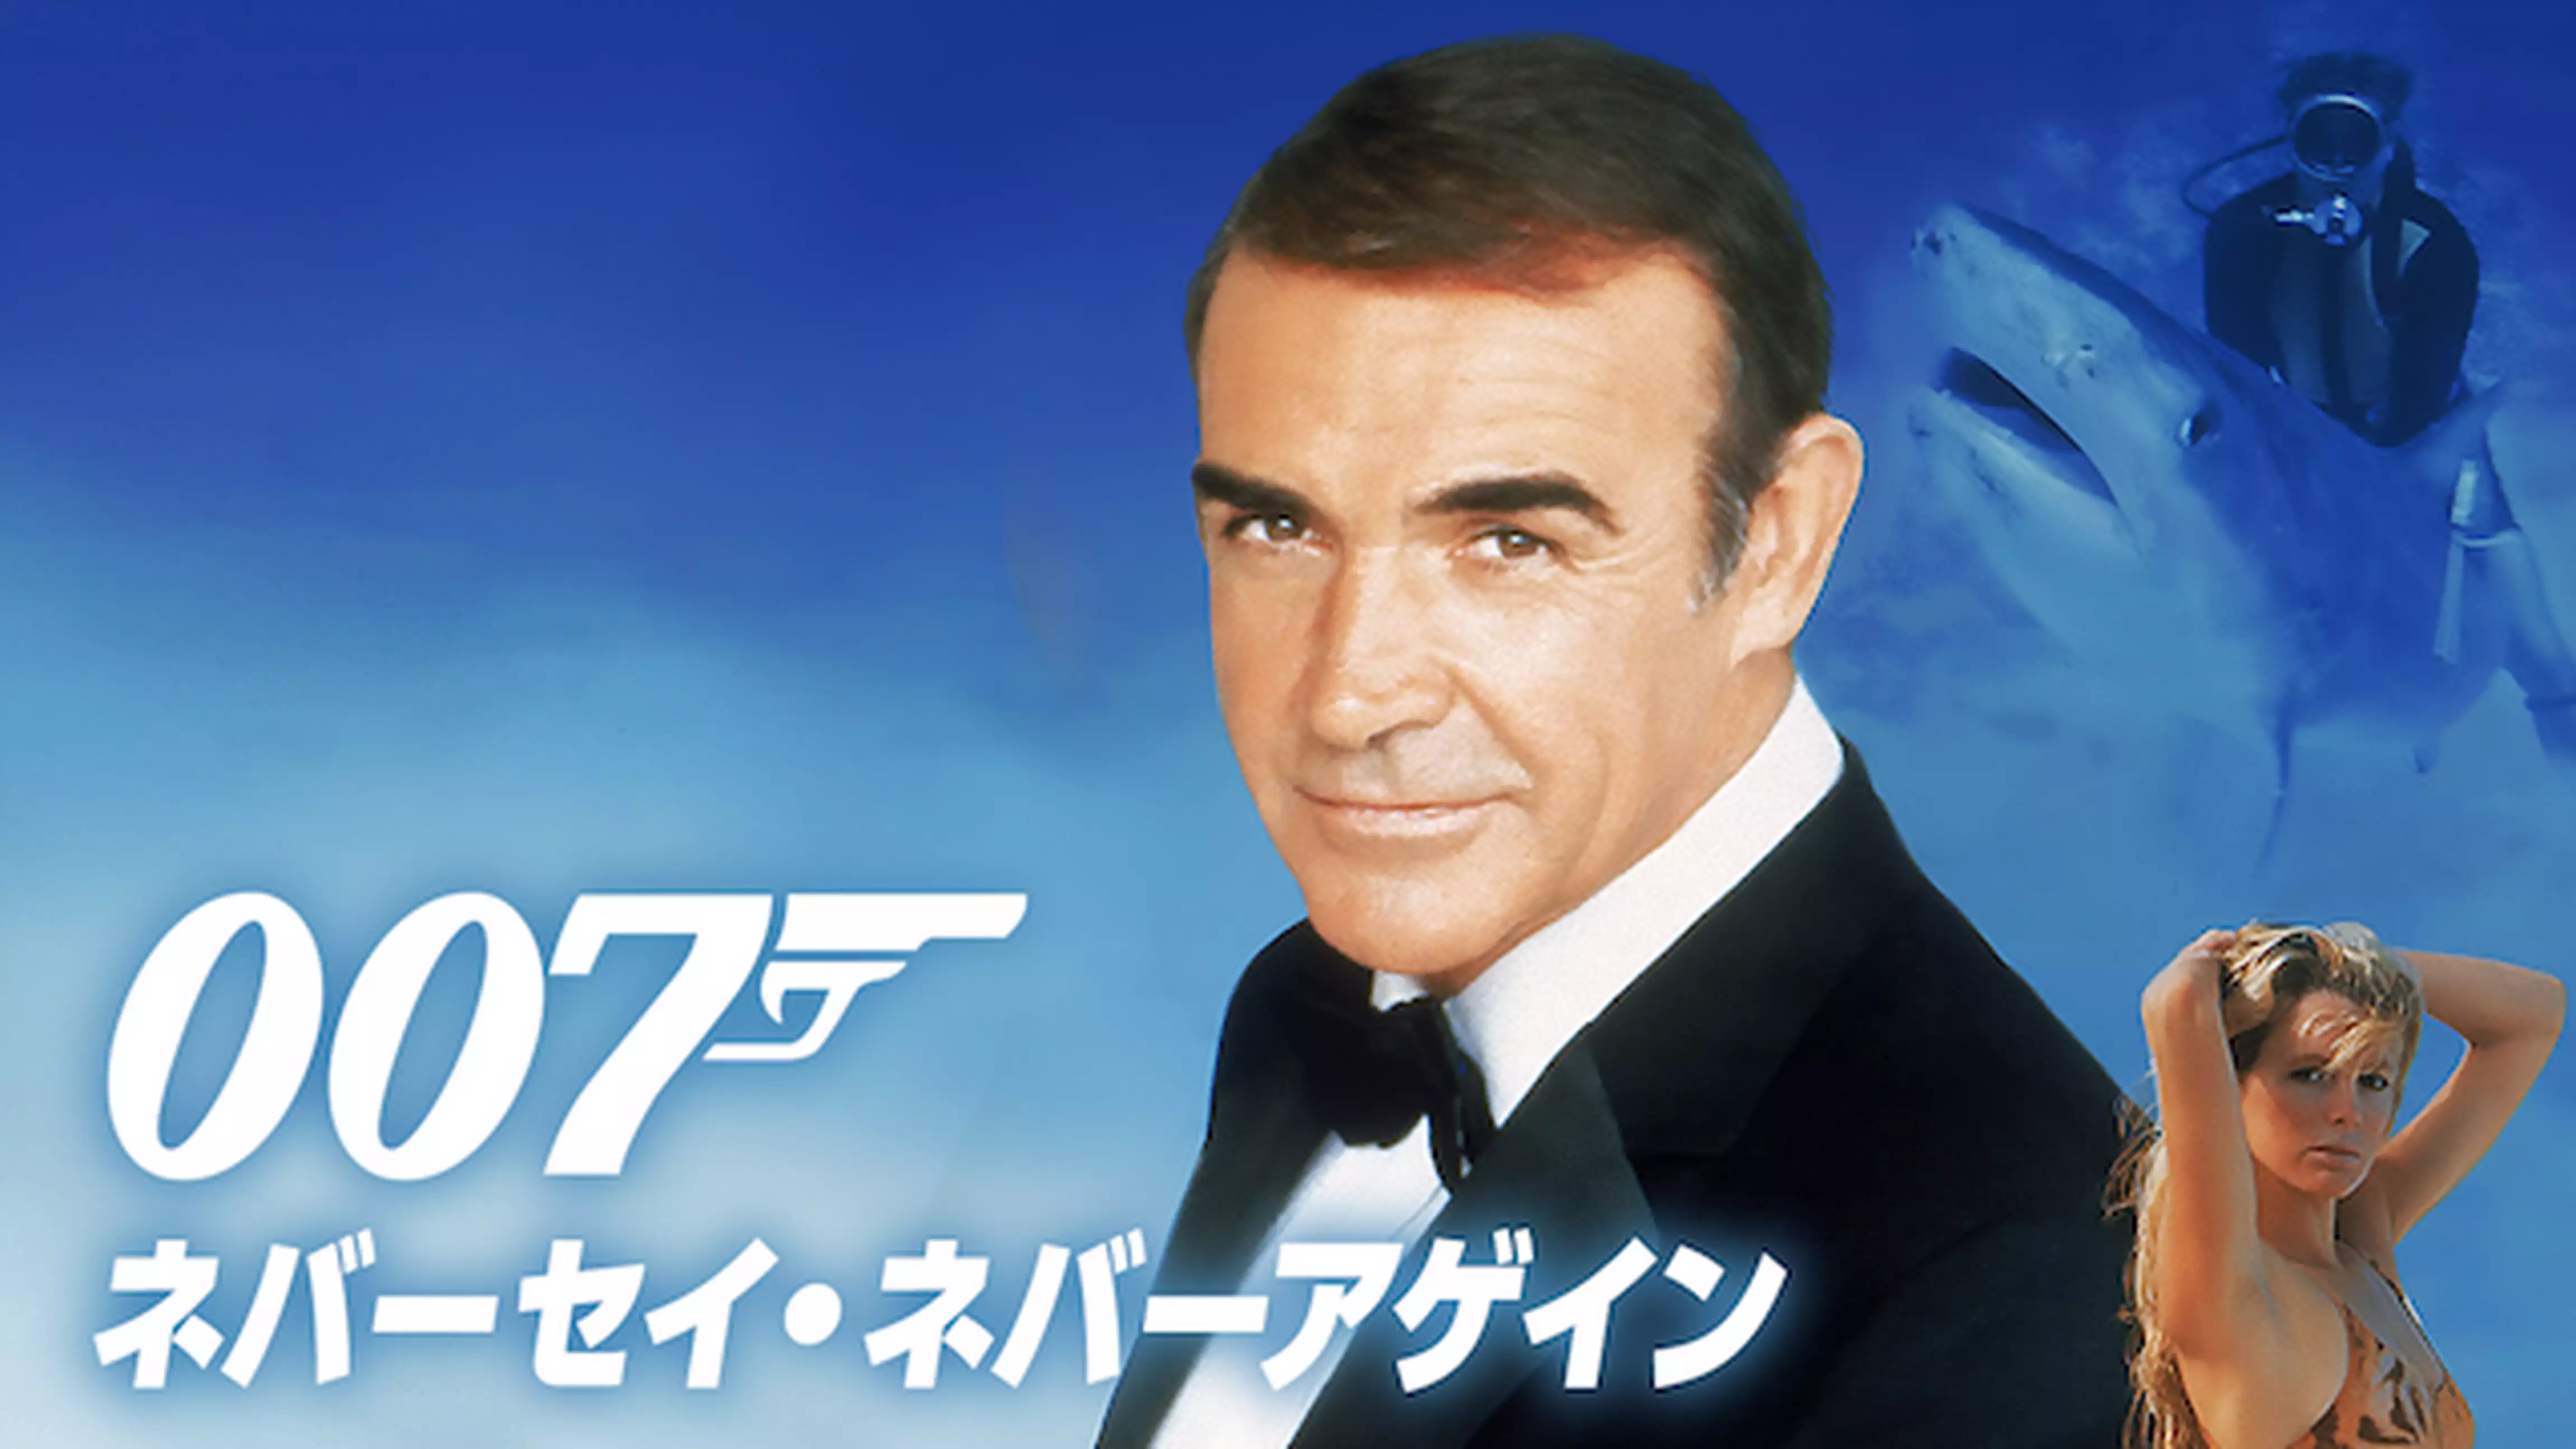 007/ネバーセイ・ネバーアゲイン(洋画 / 1983) - 動画配信 | U-NEXT 31 